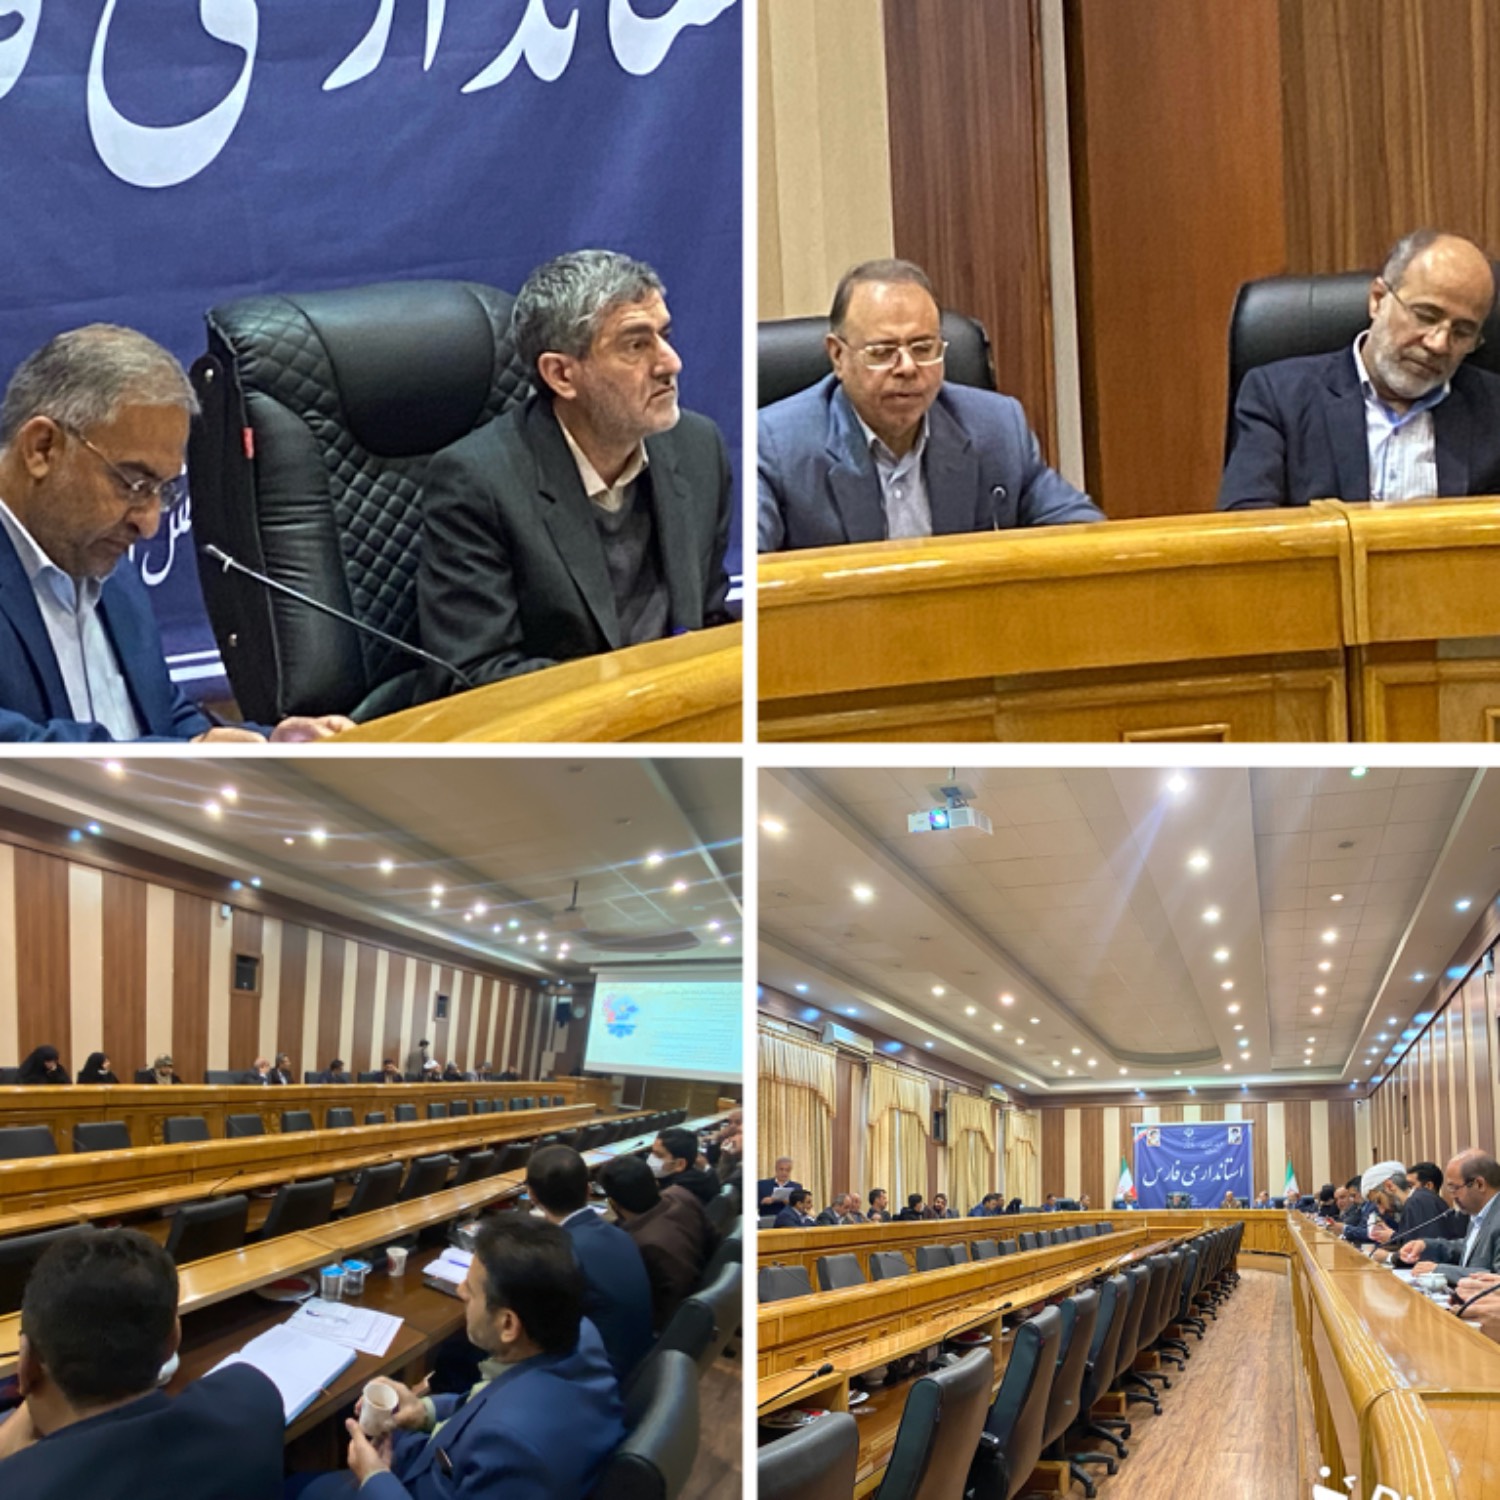 جلسه شورای آموزش و پرورش در سالن جلسات استانداری فارس